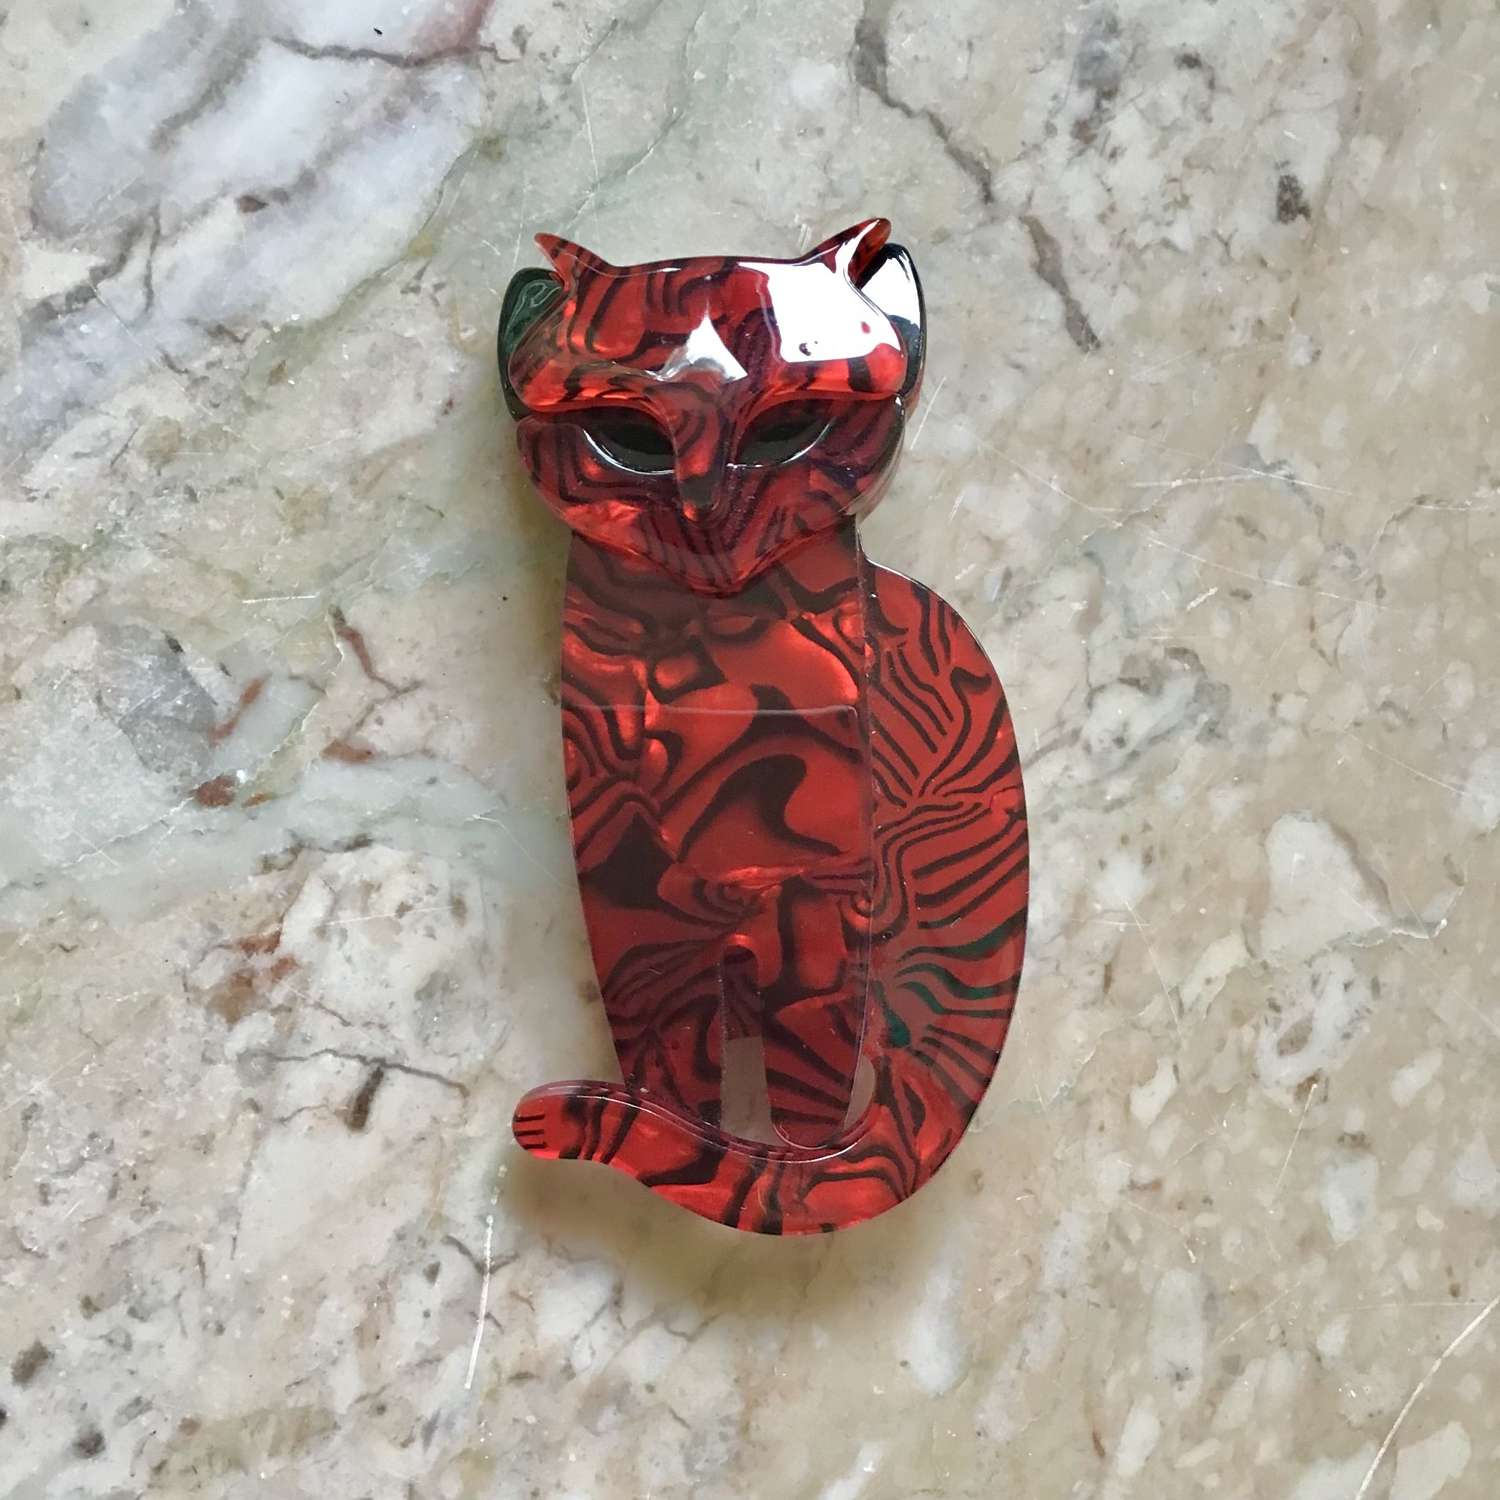 Lea Stein style red cat brooch